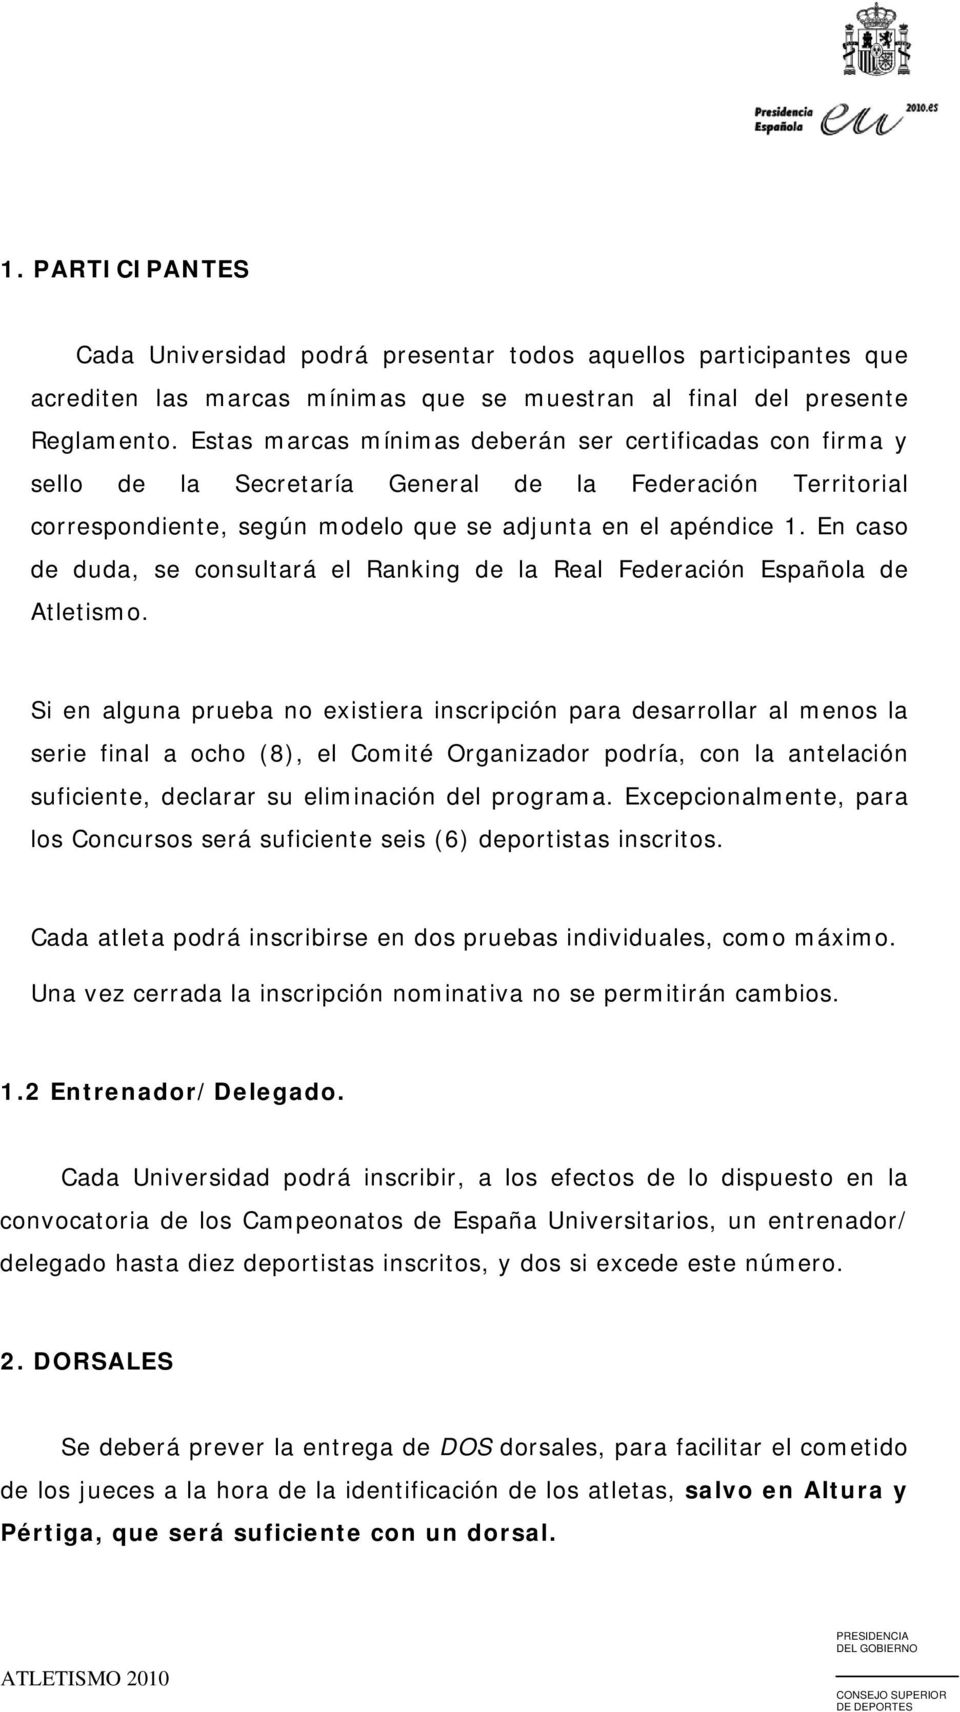 En caso de duda, se consultará el Ranking de la Real Federación Española de Atletismo.